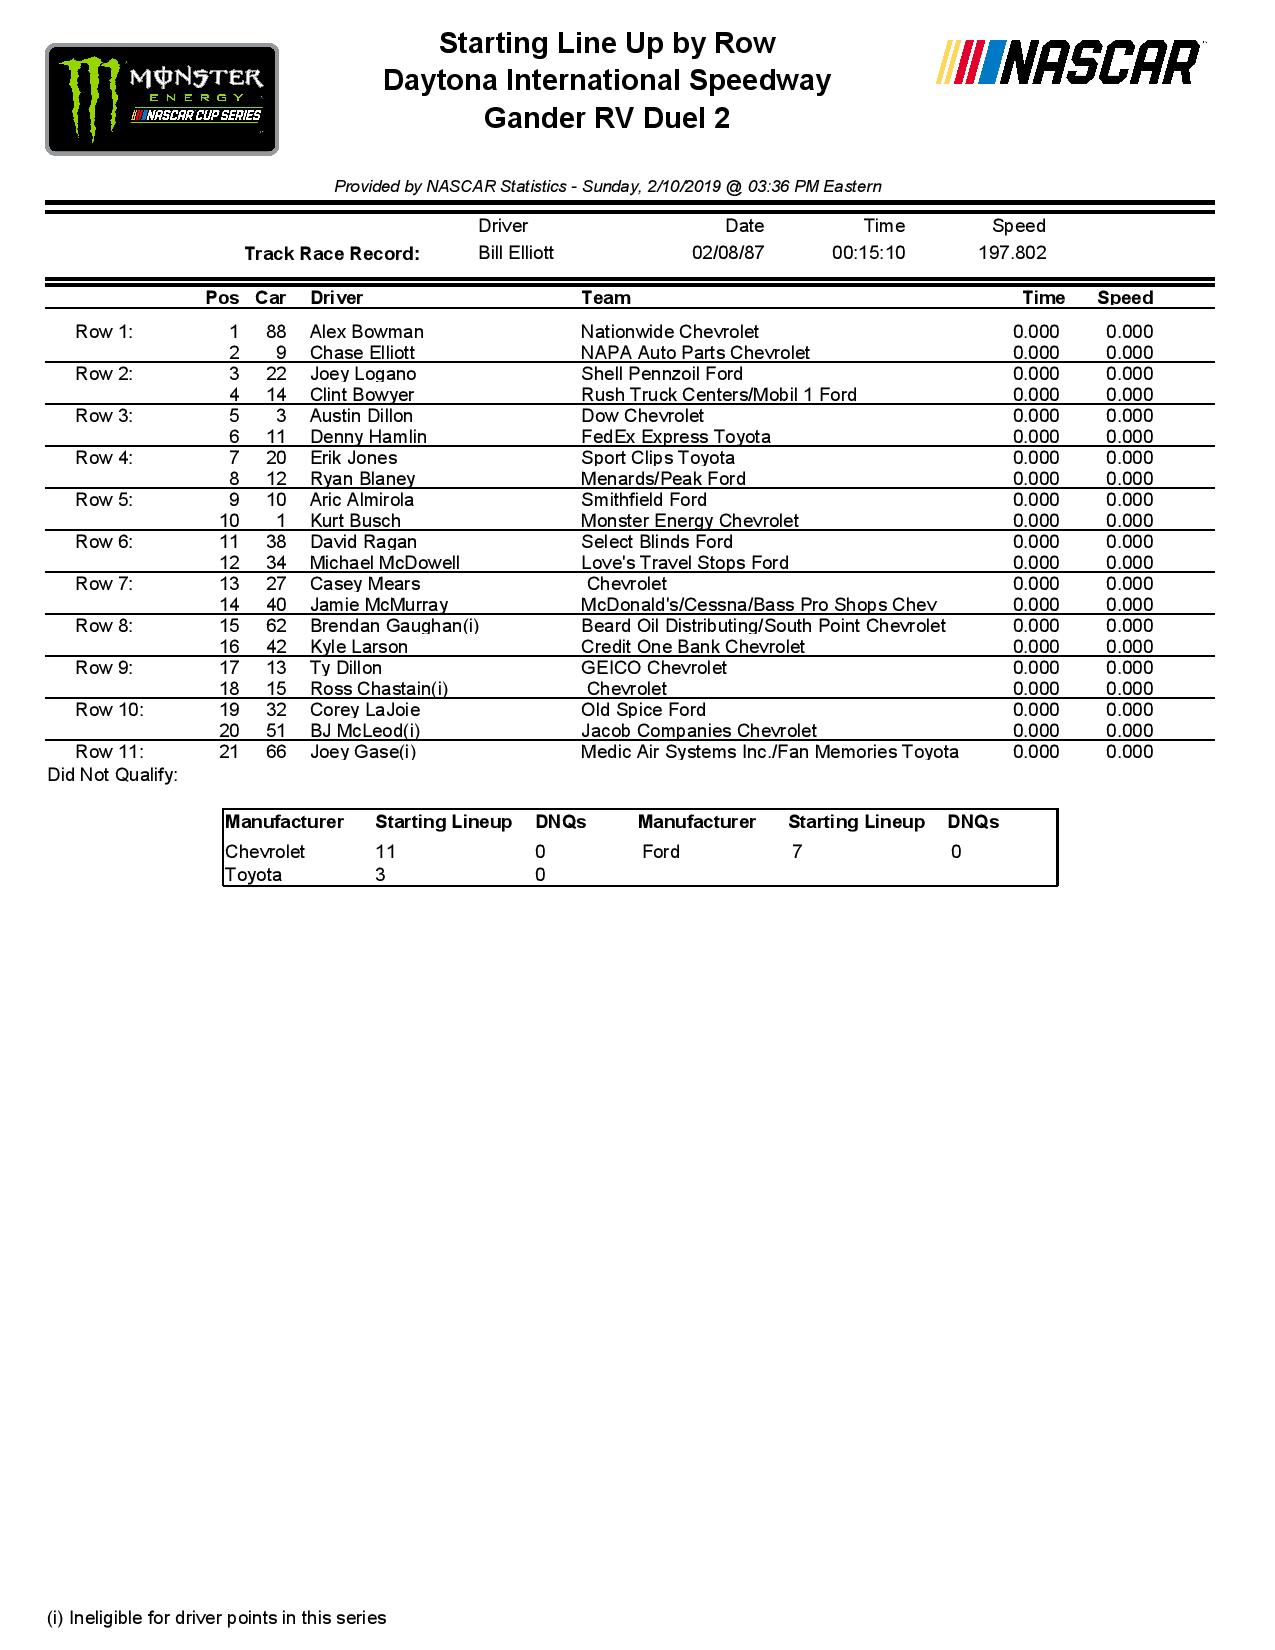 MENCS - All Results - 'Daytona 500' - Daytona International Speedway - 2/2019 ...1275 x 1650